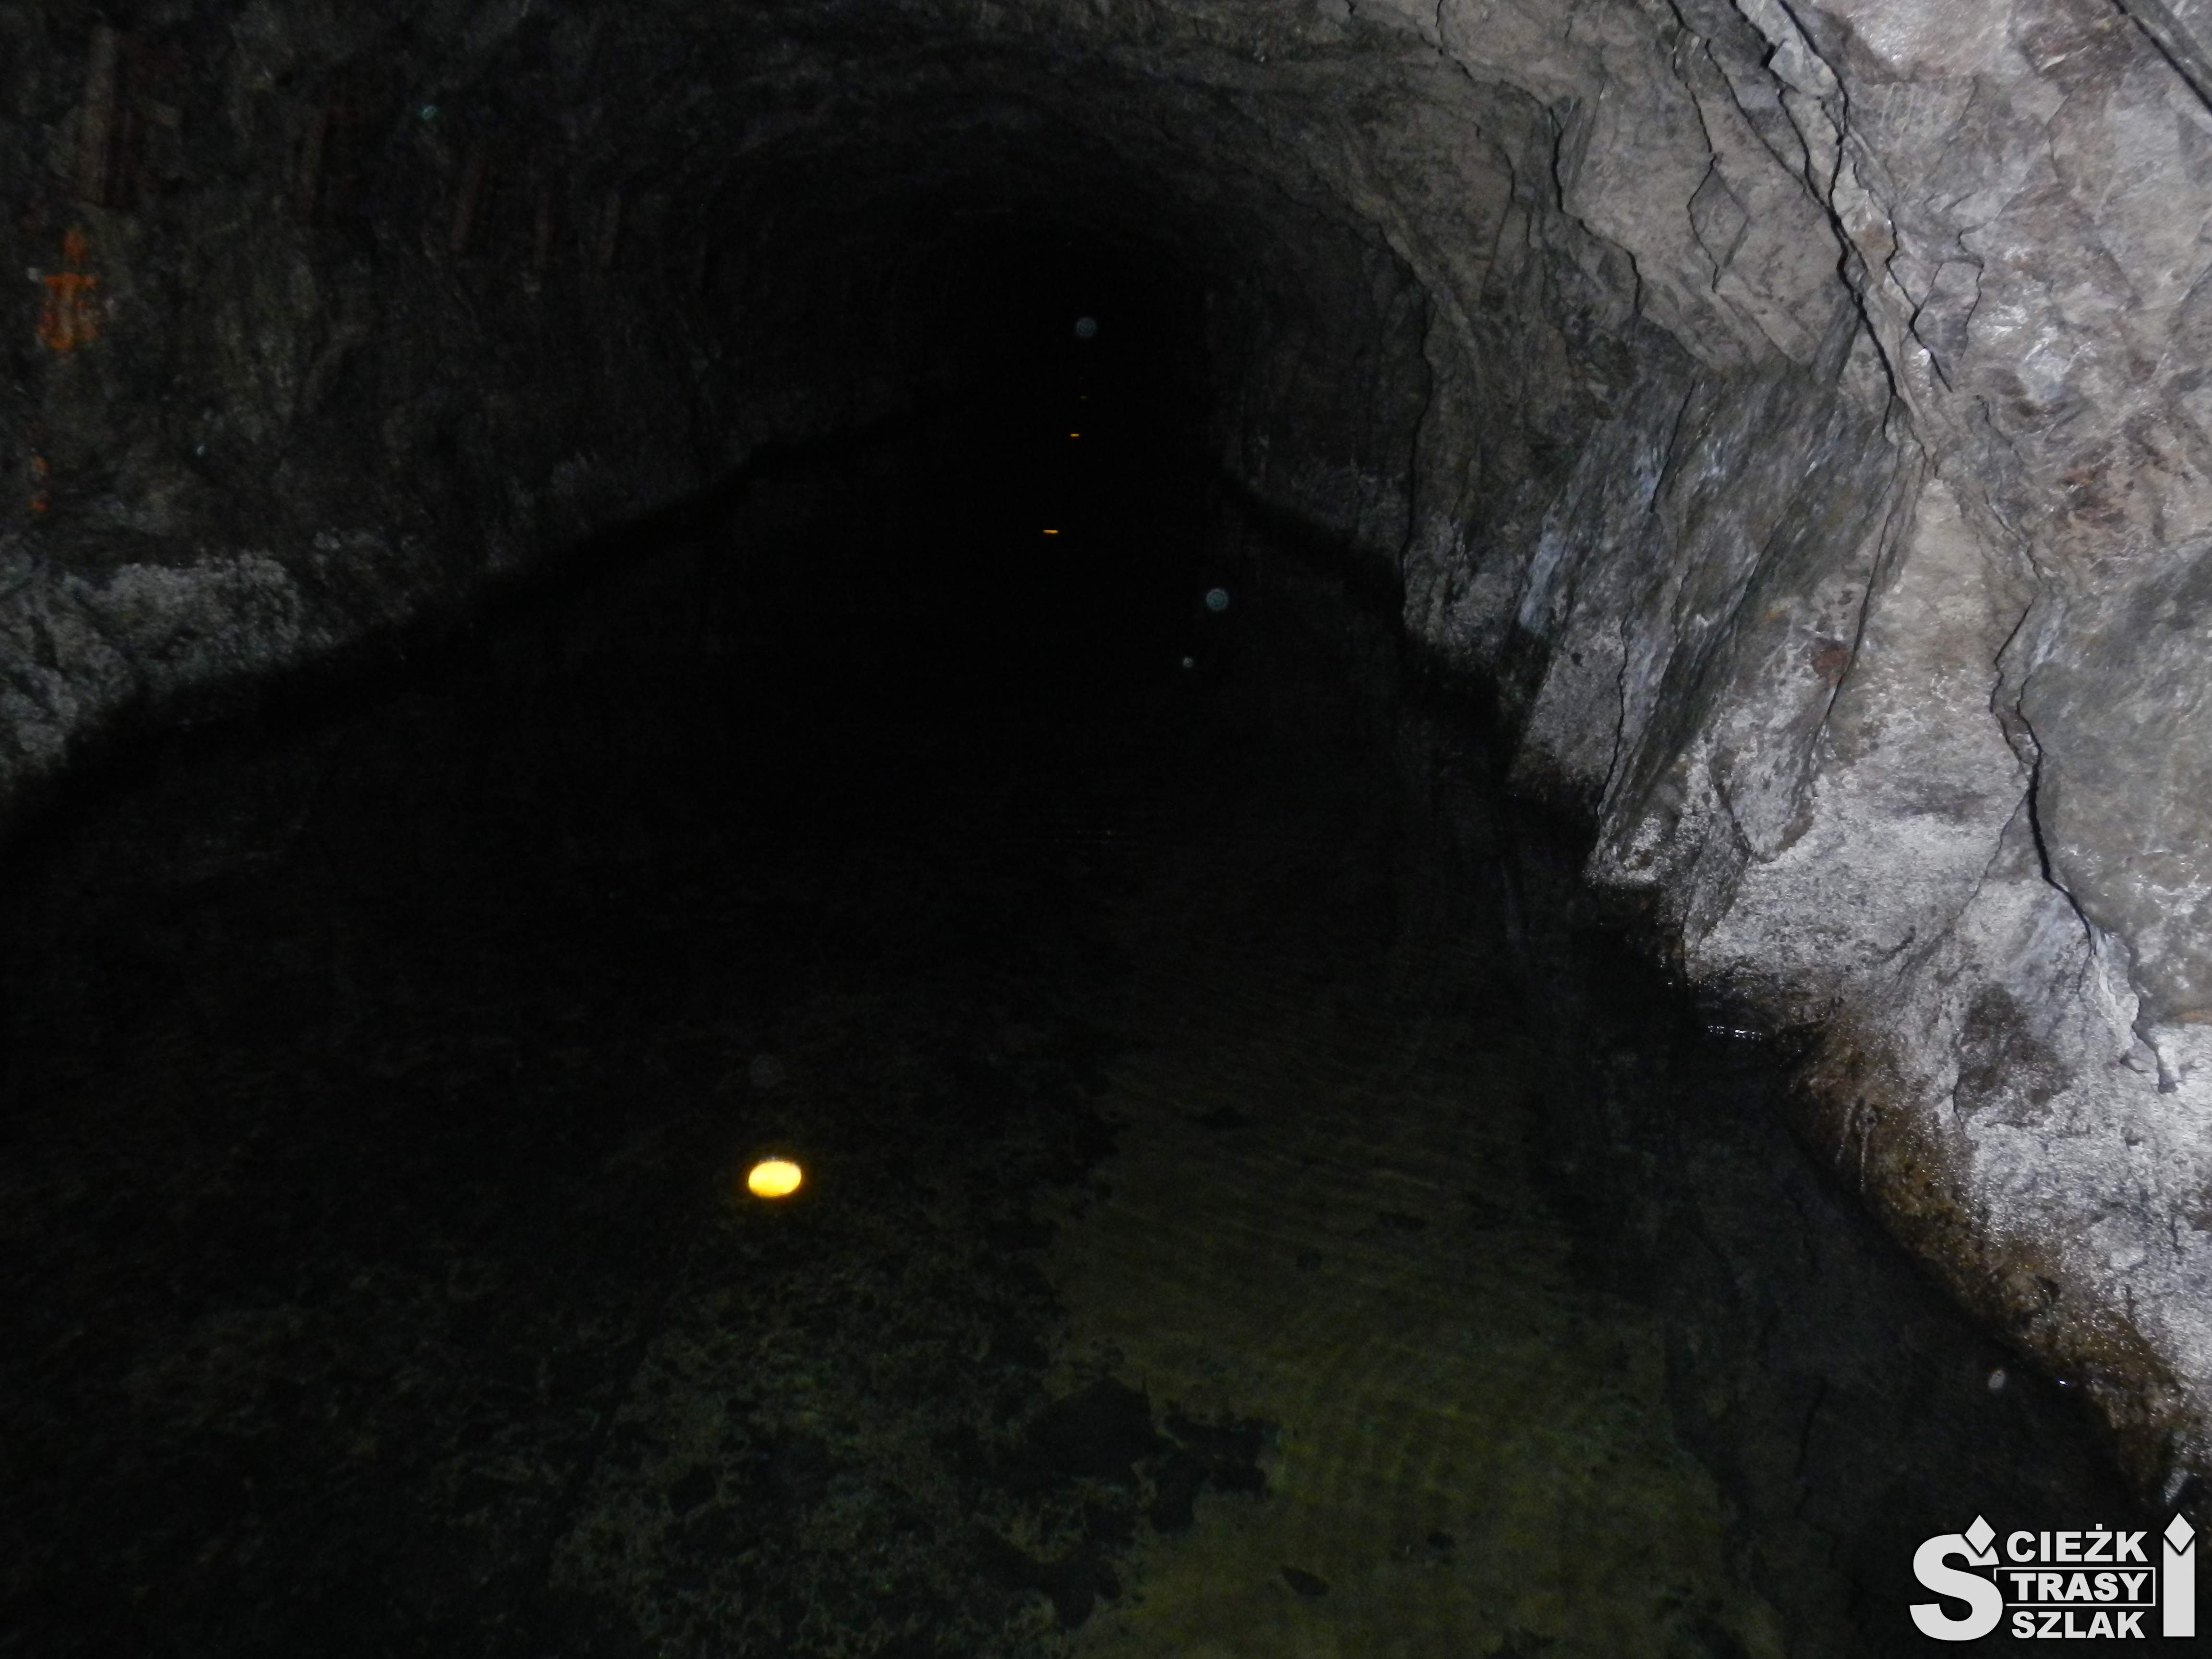 Nikłe punkty świetle wyznaczające trasę podziemnego spływu łodzią wąskim tunelem